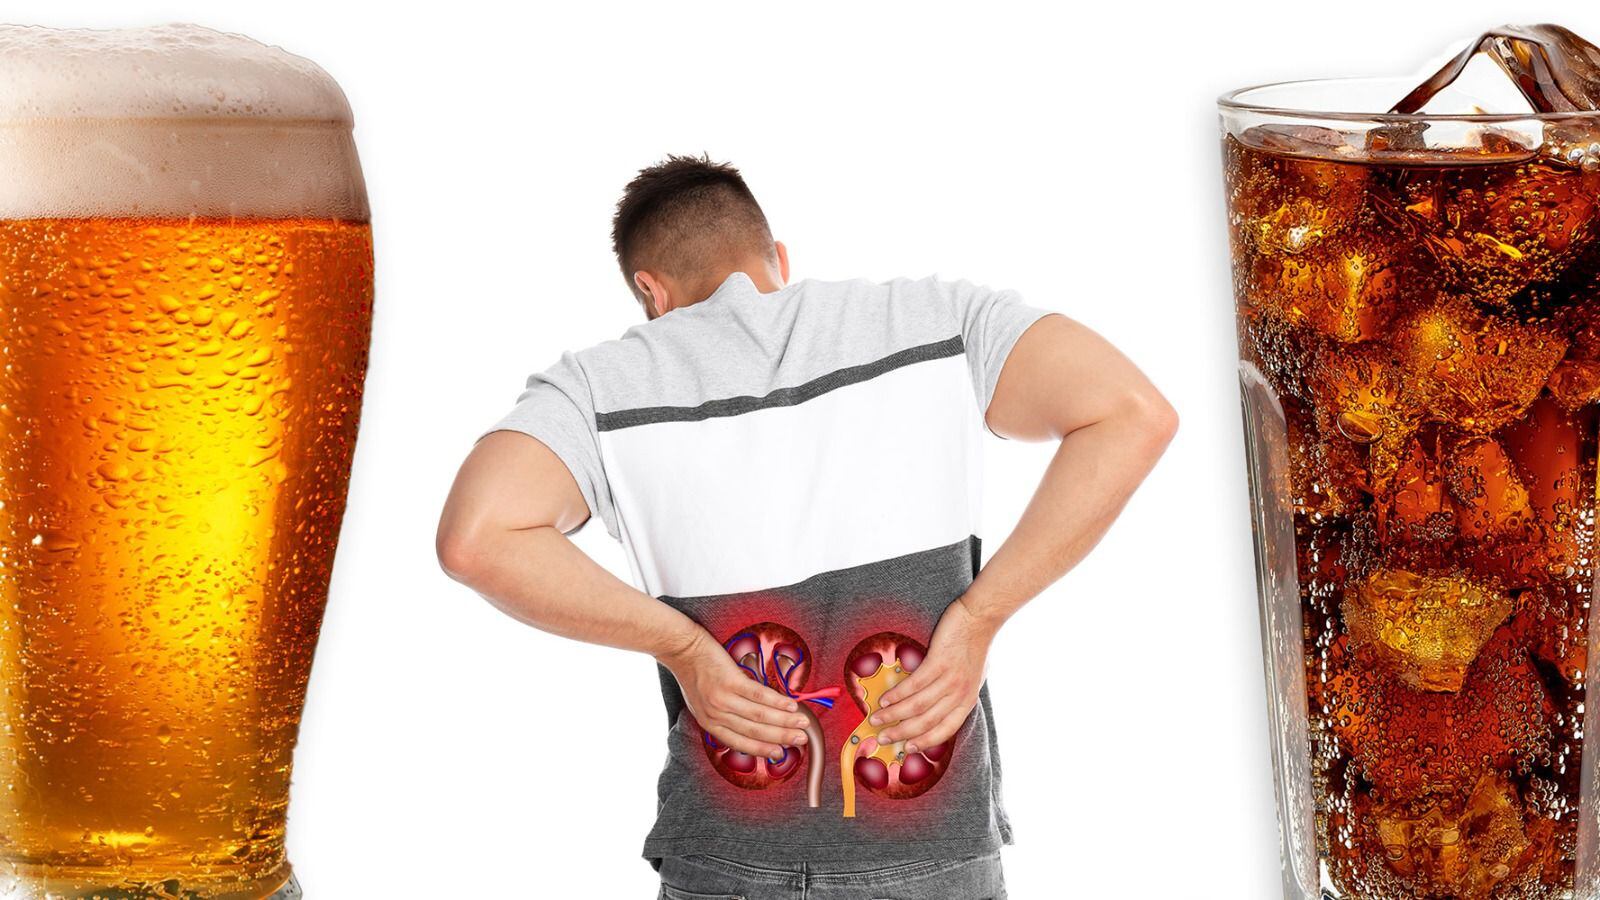 En exceso, refresco y cerveza pueden ser dañinos para órganos como los riñones. (Foto: Especial).